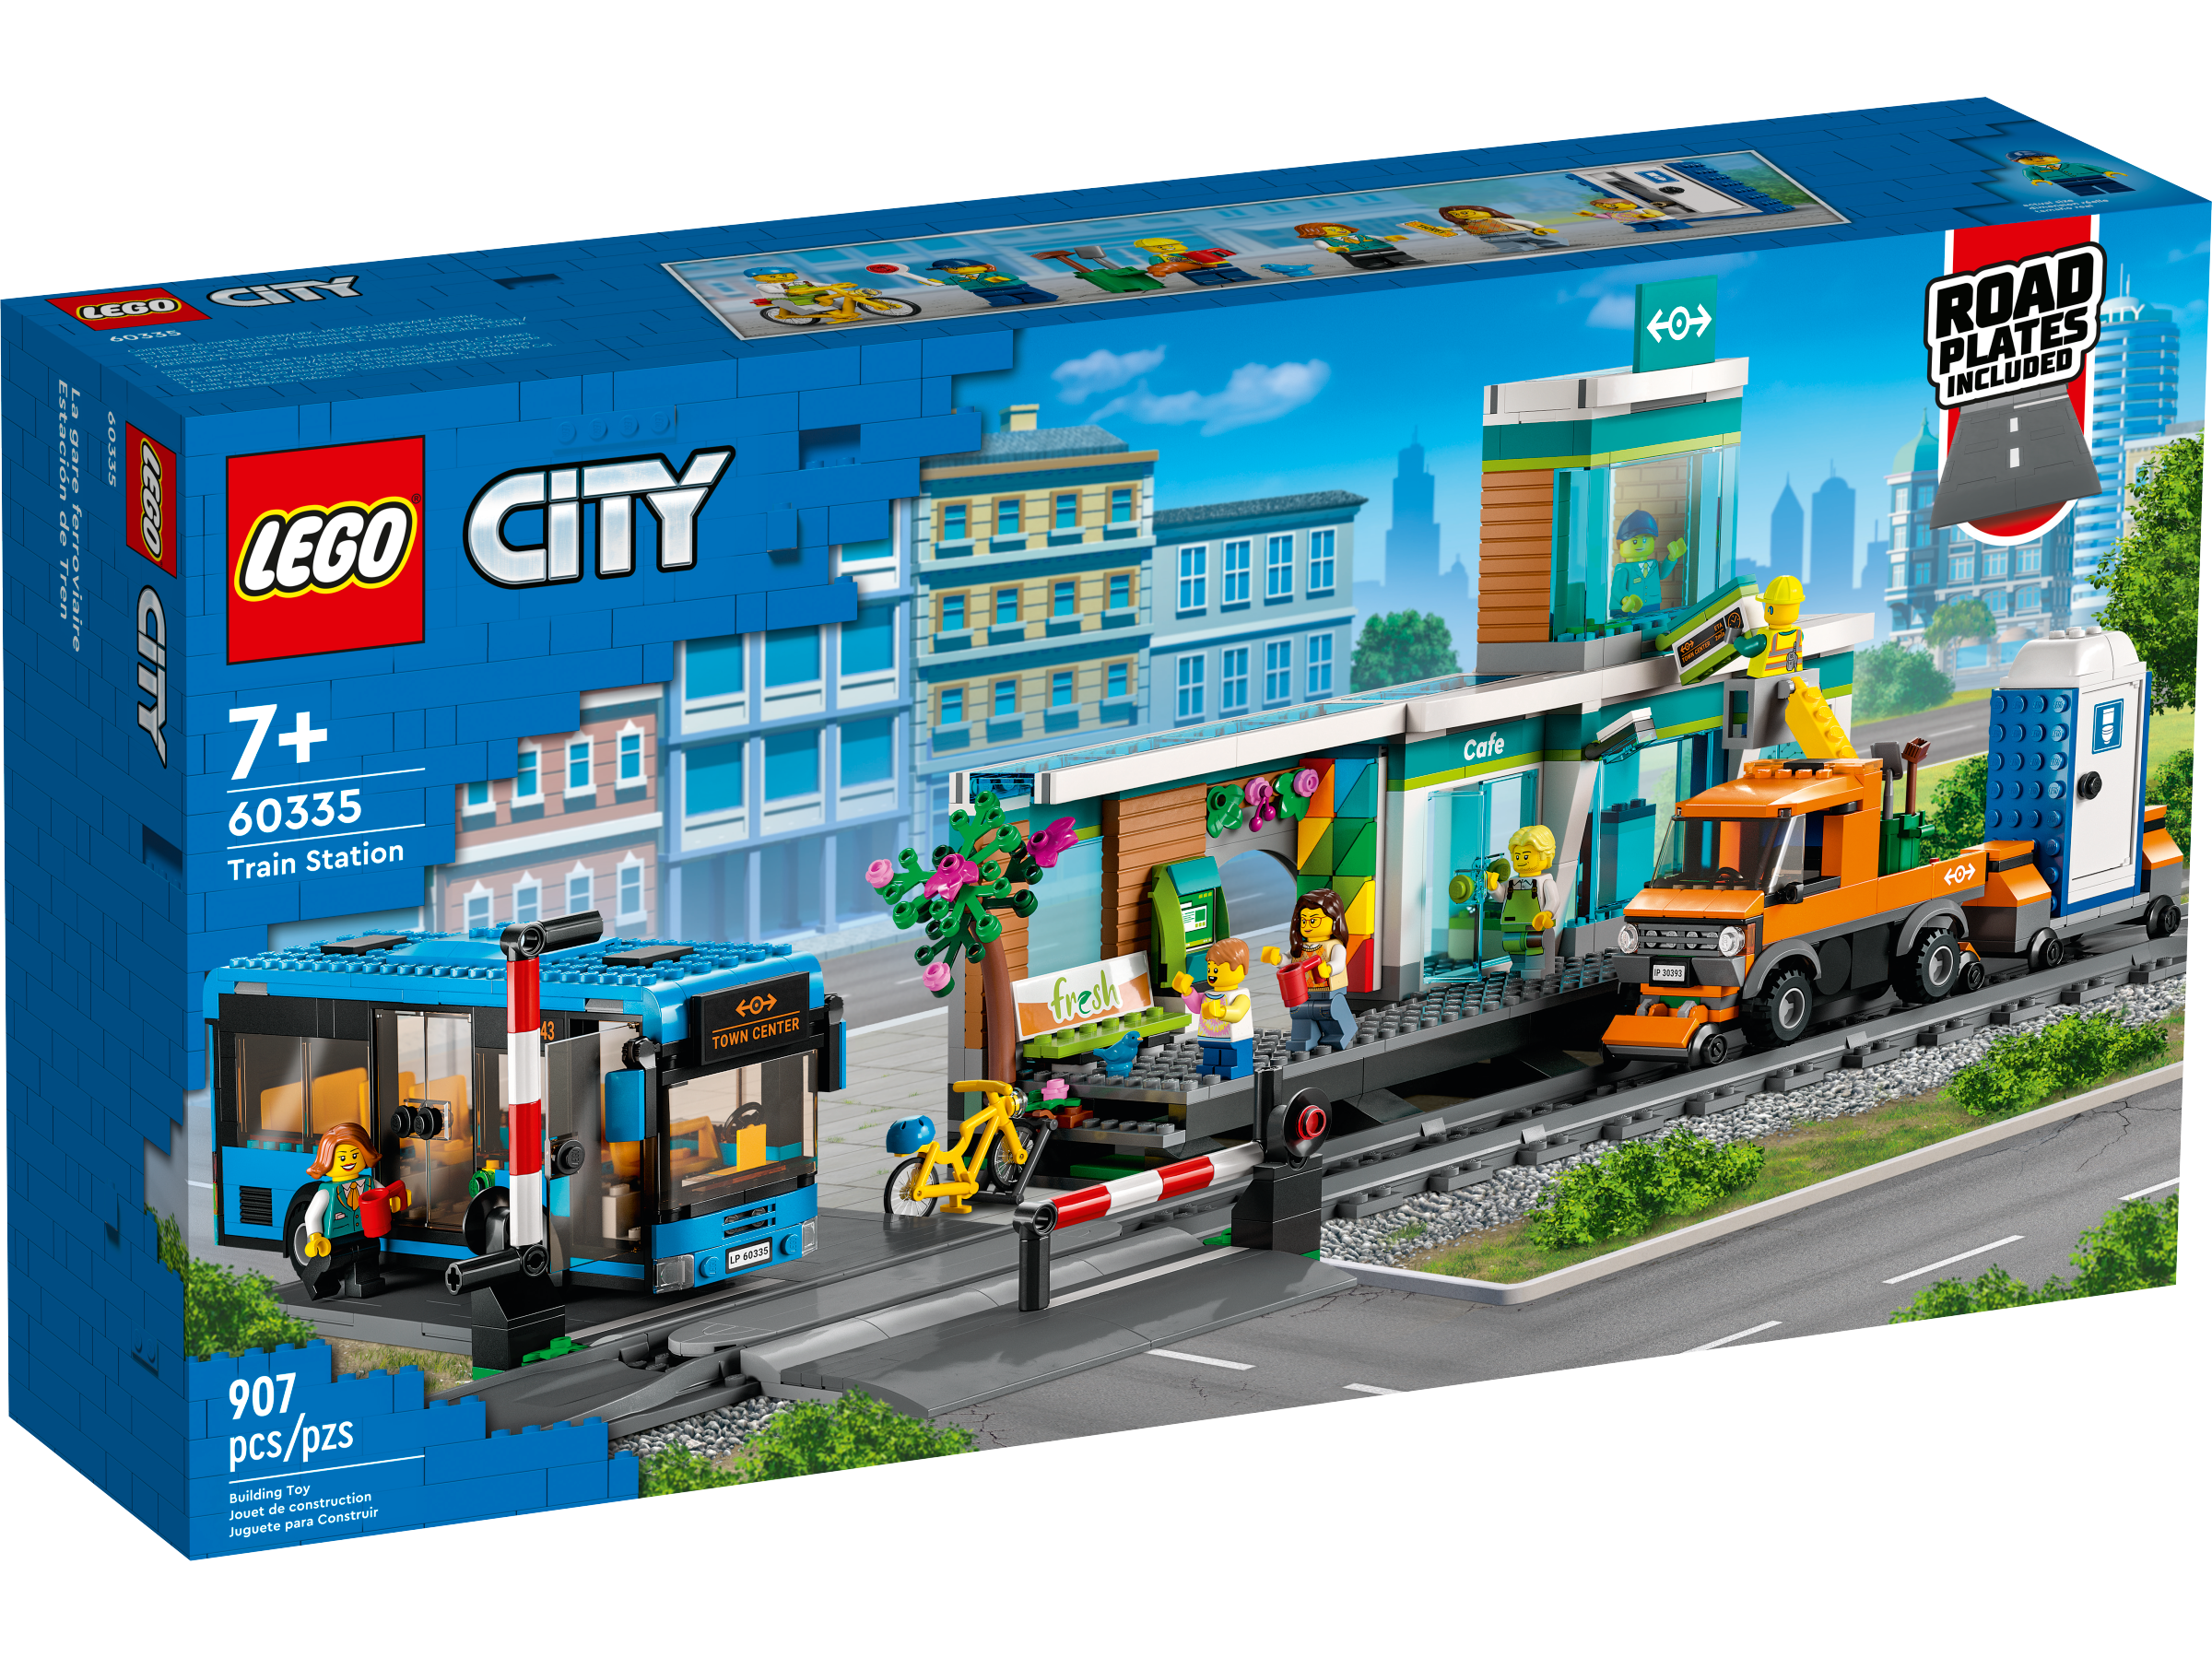 LEGO City Bahnhof (60335) - im GOLDSTIEN.SHOP verfügbar mit Gratisversand ab Schweizer Lager! (5702017189727)